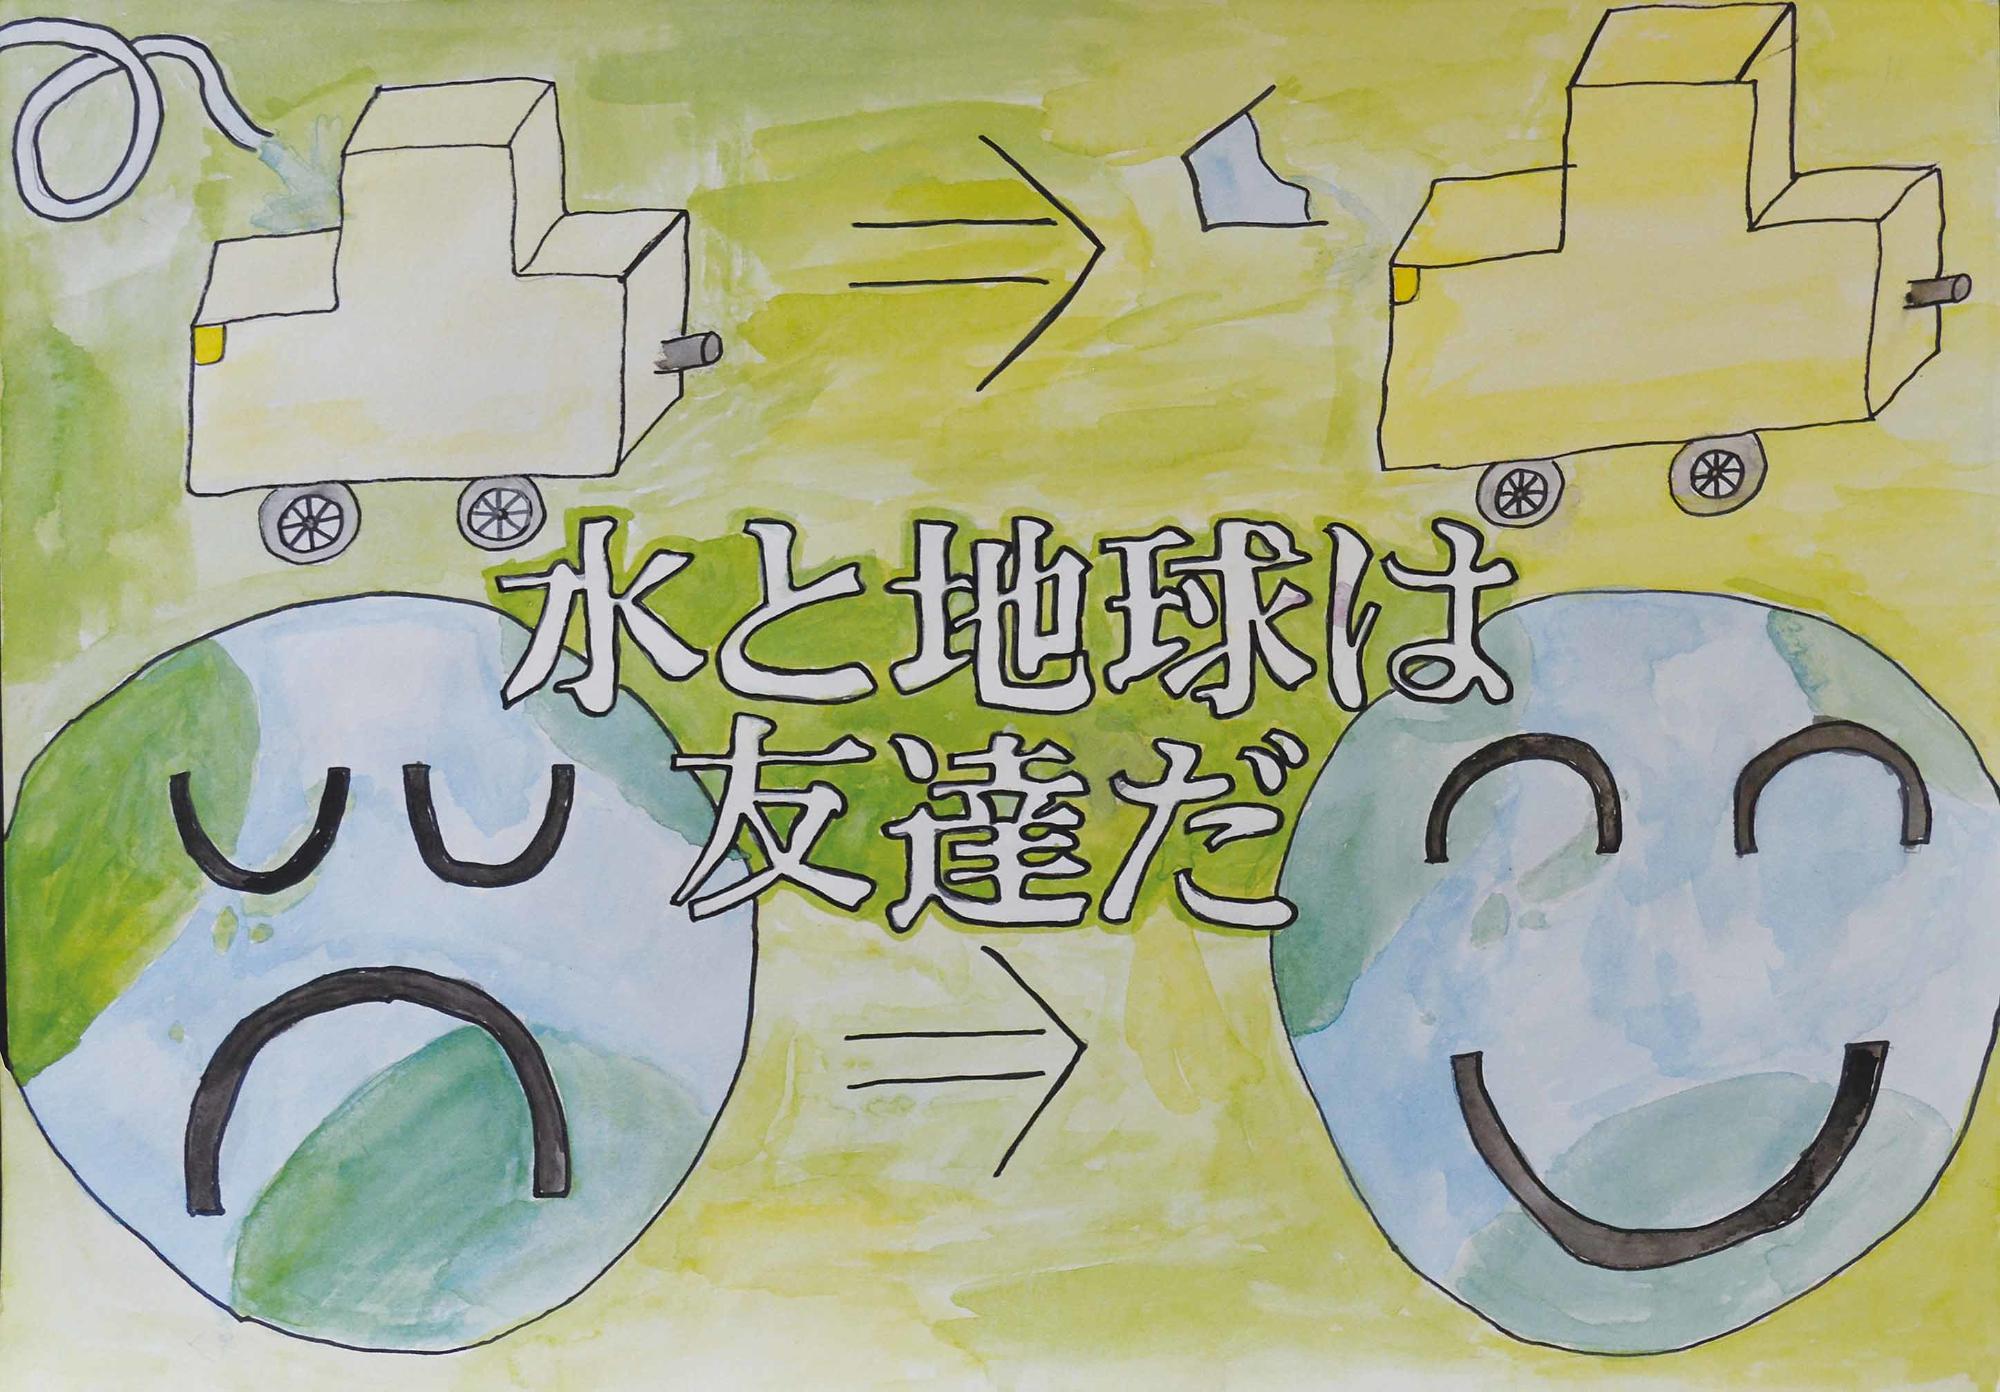 優秀作品 西志津小学校 5年 中村純菜さん（水と地球は友達だ、上部にホースで水をかけている車とバケツで水をかけている車、下部に悲しい表情の地球と笑顔の地球が描かれている）